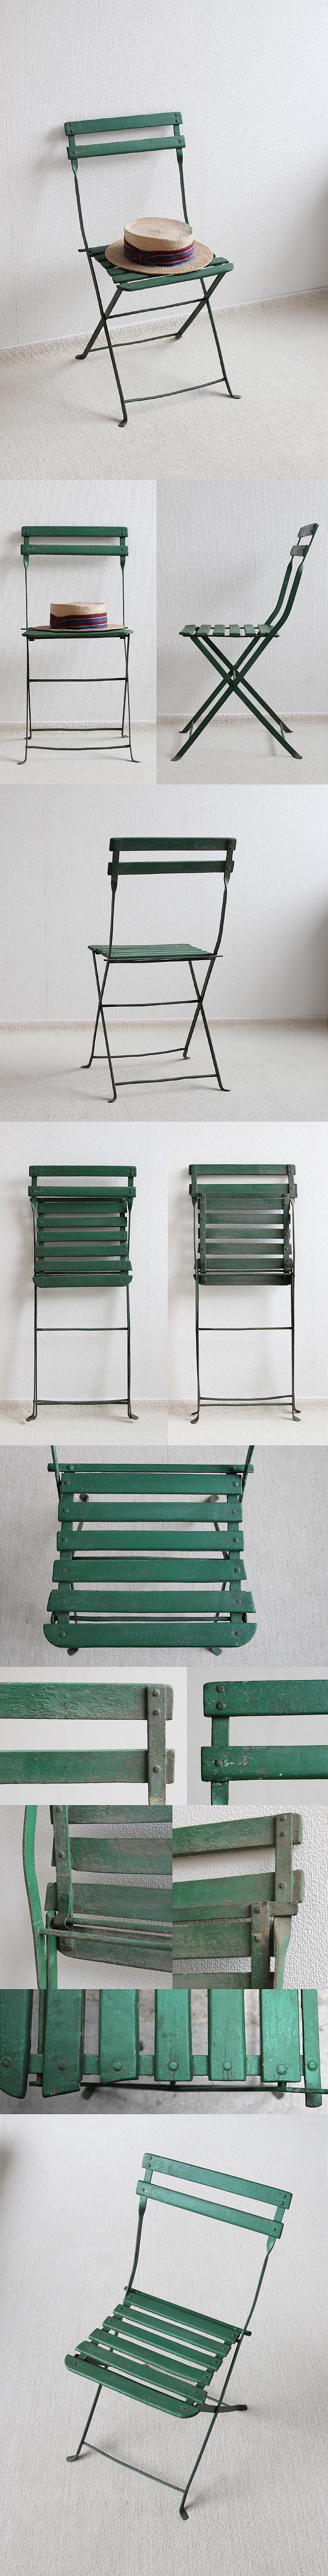 フランス アンティーク フォールディングチェア 木製椅子 折りたたみ式 ペイント家具「ガーデンチェア」P-393